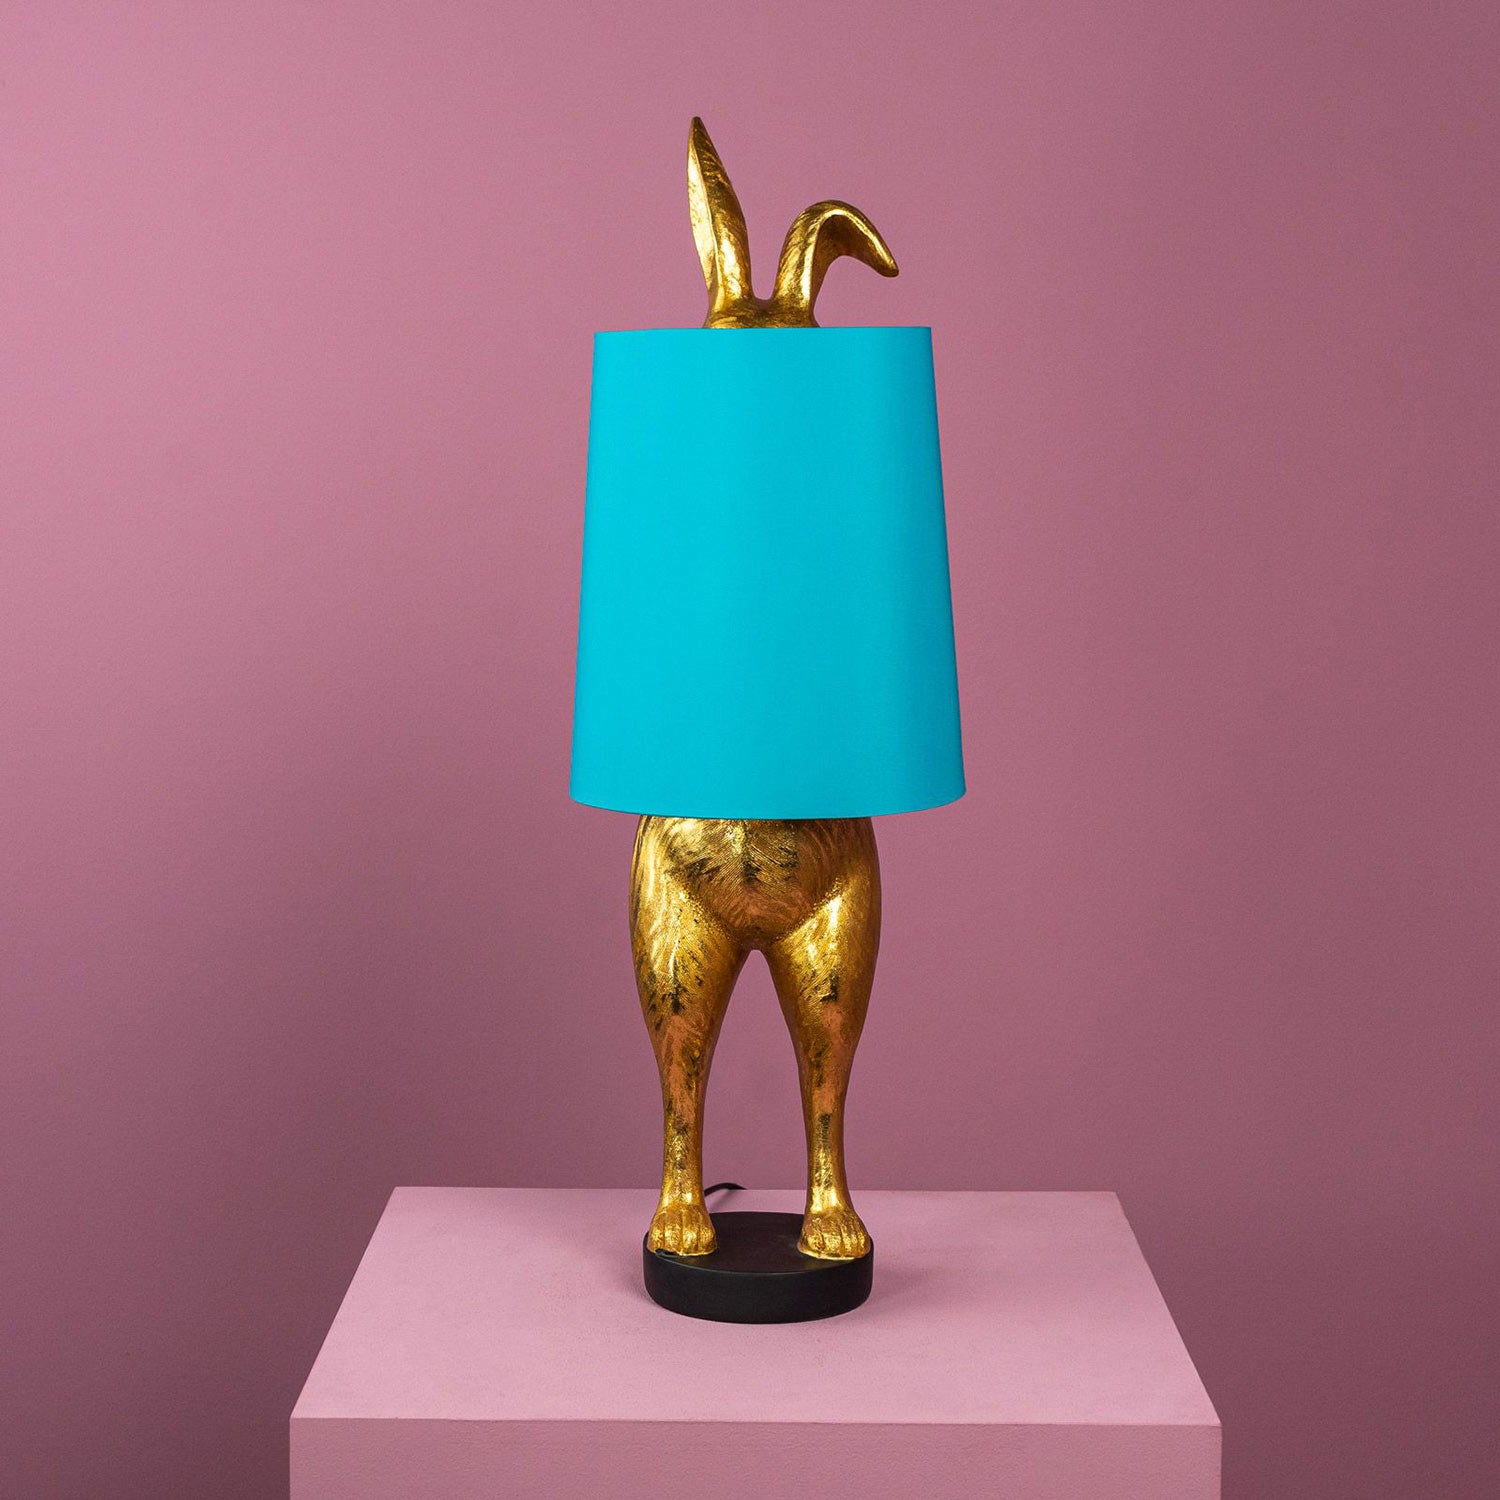 Aranyszínű, rejtőzködő nyuszi figurás, 74 cm magas, kortárs, glamour stílusú, díjnyertes dizájn asztali lámpa, türkizszínű lámpaernyővel, mályva színű fal előtt.